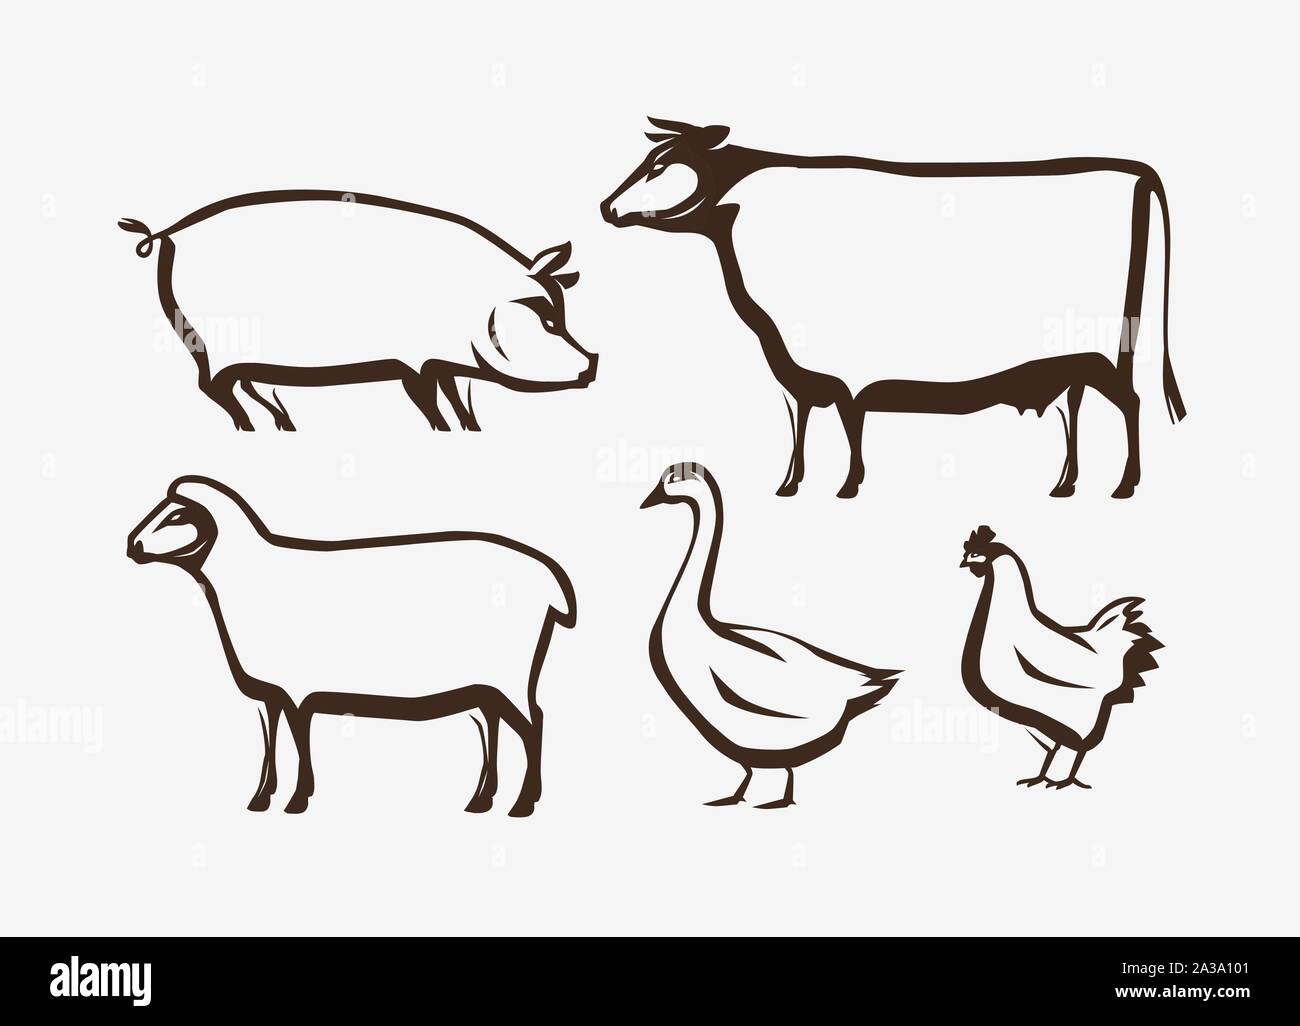 Farm animals set. Farming, husbandry vector illustration Stock Vector